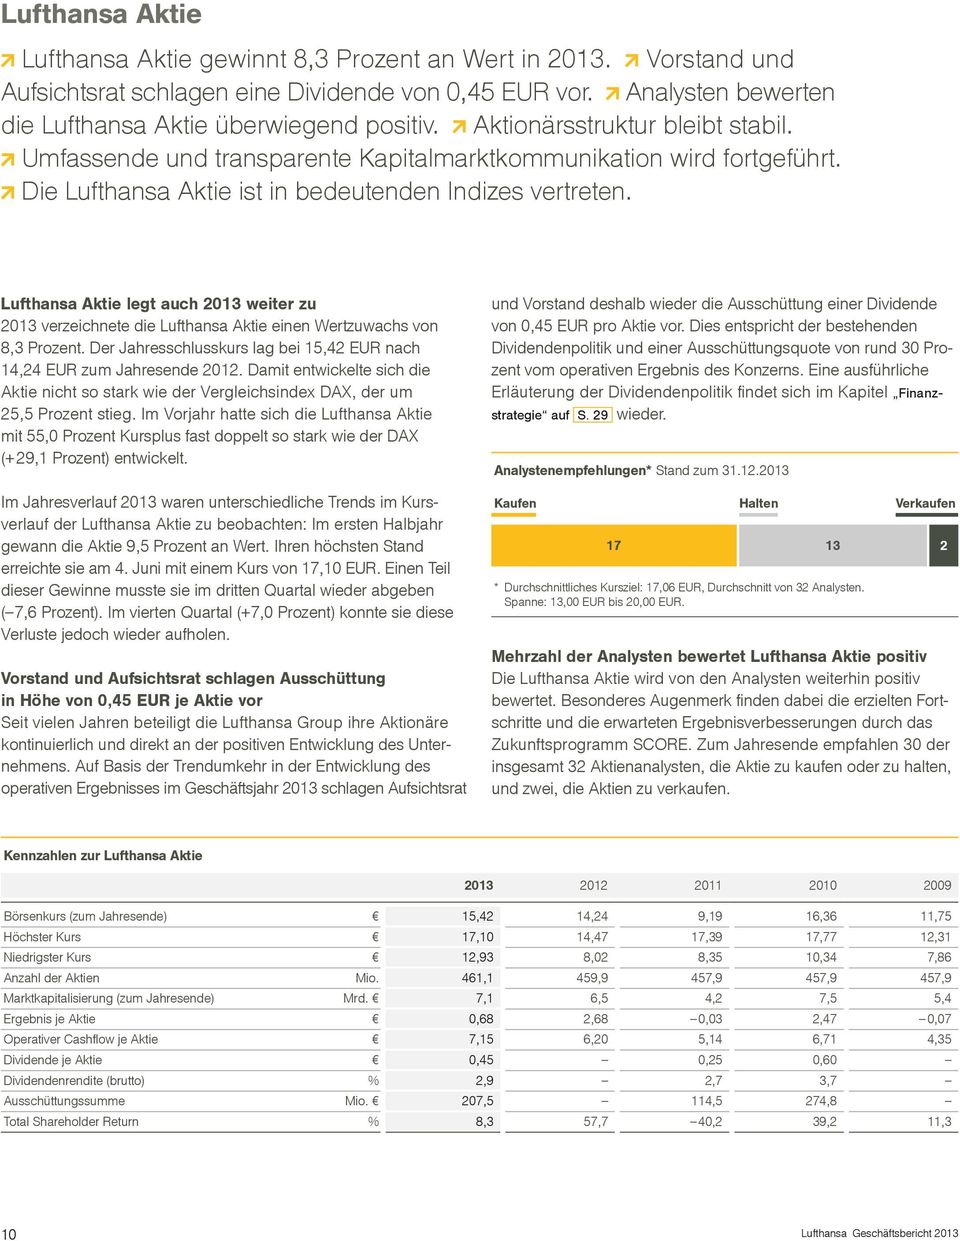 Lufthansa Aktie legt auch 2013 weiter zu 2013 verzeichnete die Lufthansa Aktie einen Wertzuwachs von 8,3 Prozent. Der Jahresschlusskurs lag bei 15,42 EUR nach 14,24 EUR zum Jahresende 2012.